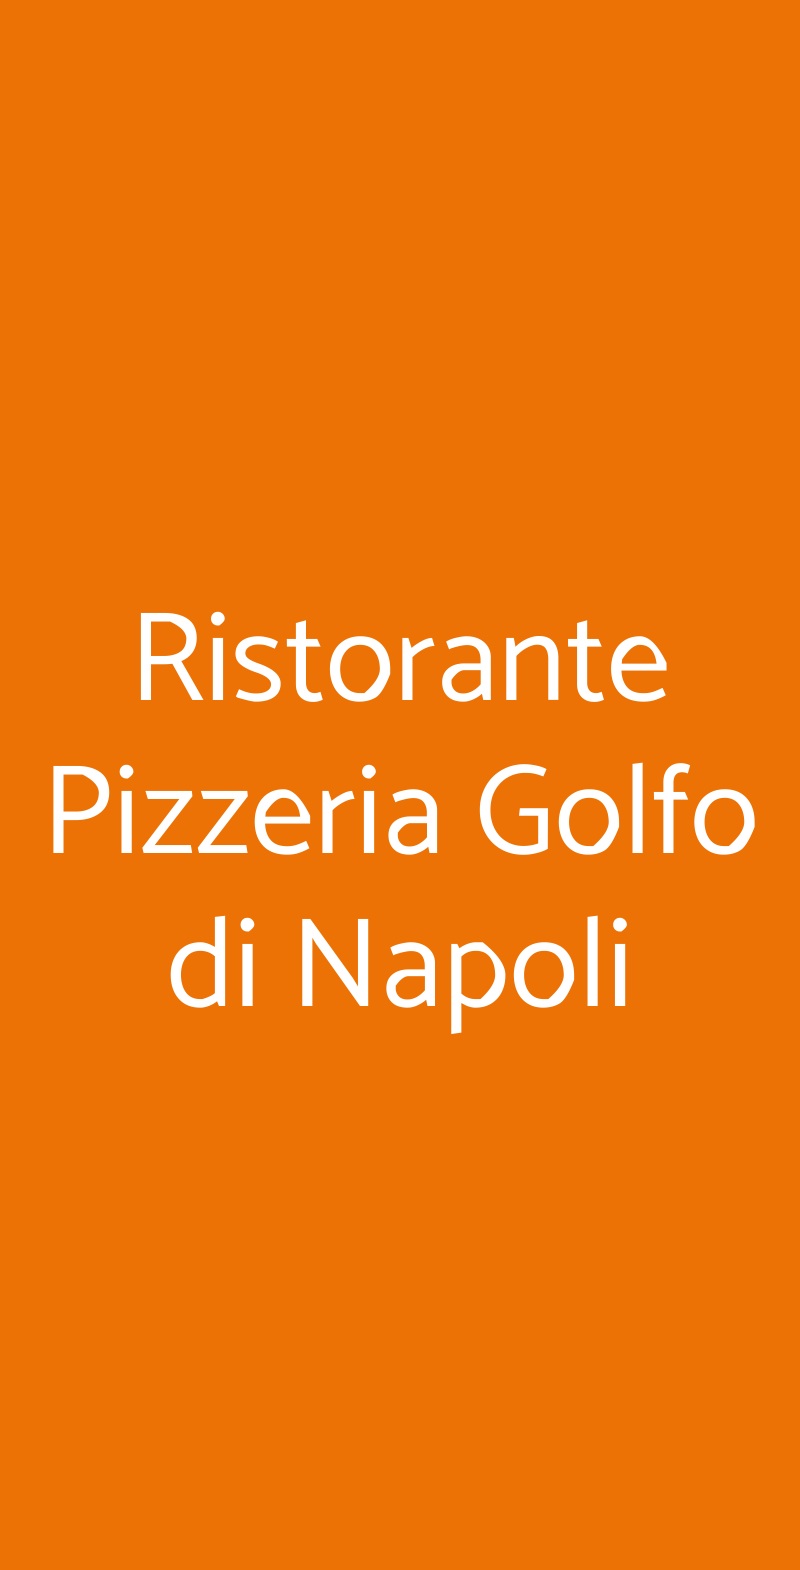 Ristorante Pizzeria Golfo di Napoli Roma menù 1 pagina